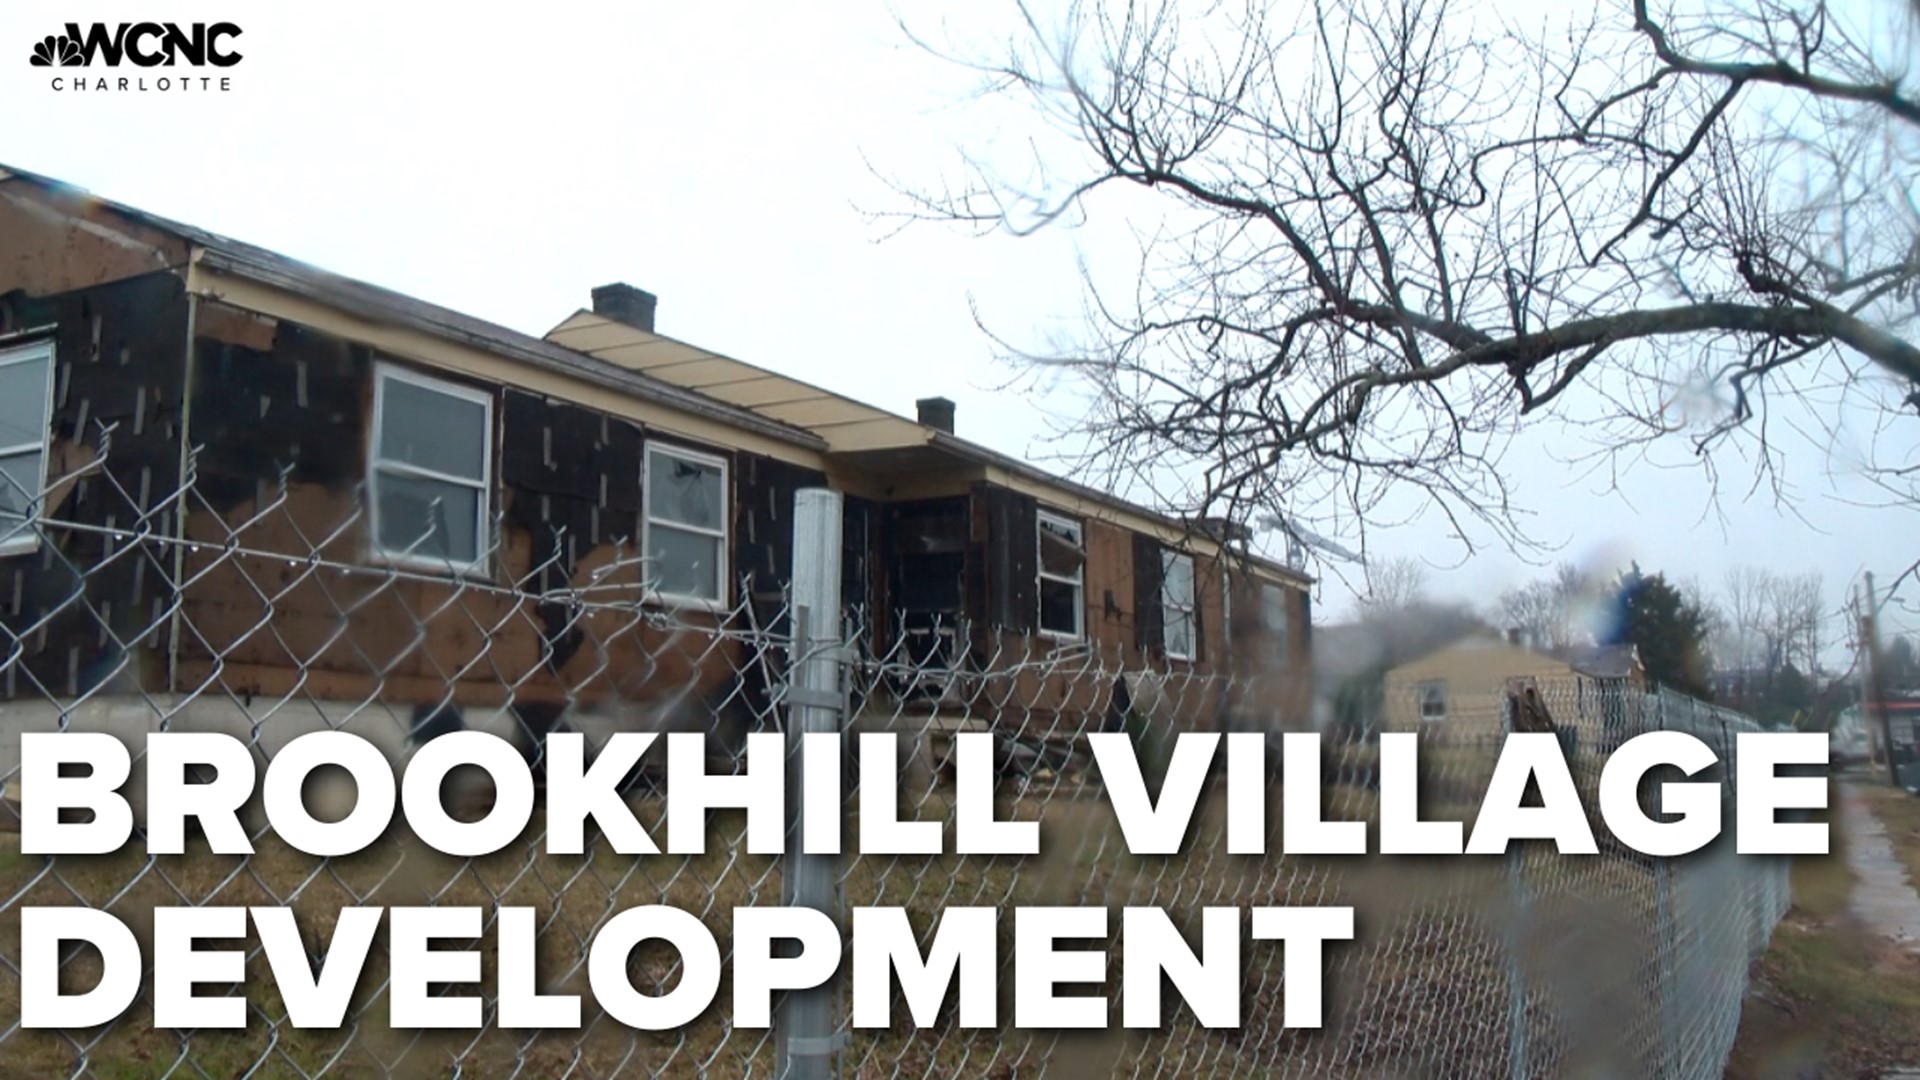 'Transformative Changes' underway in Charlotte's Brookhill Village